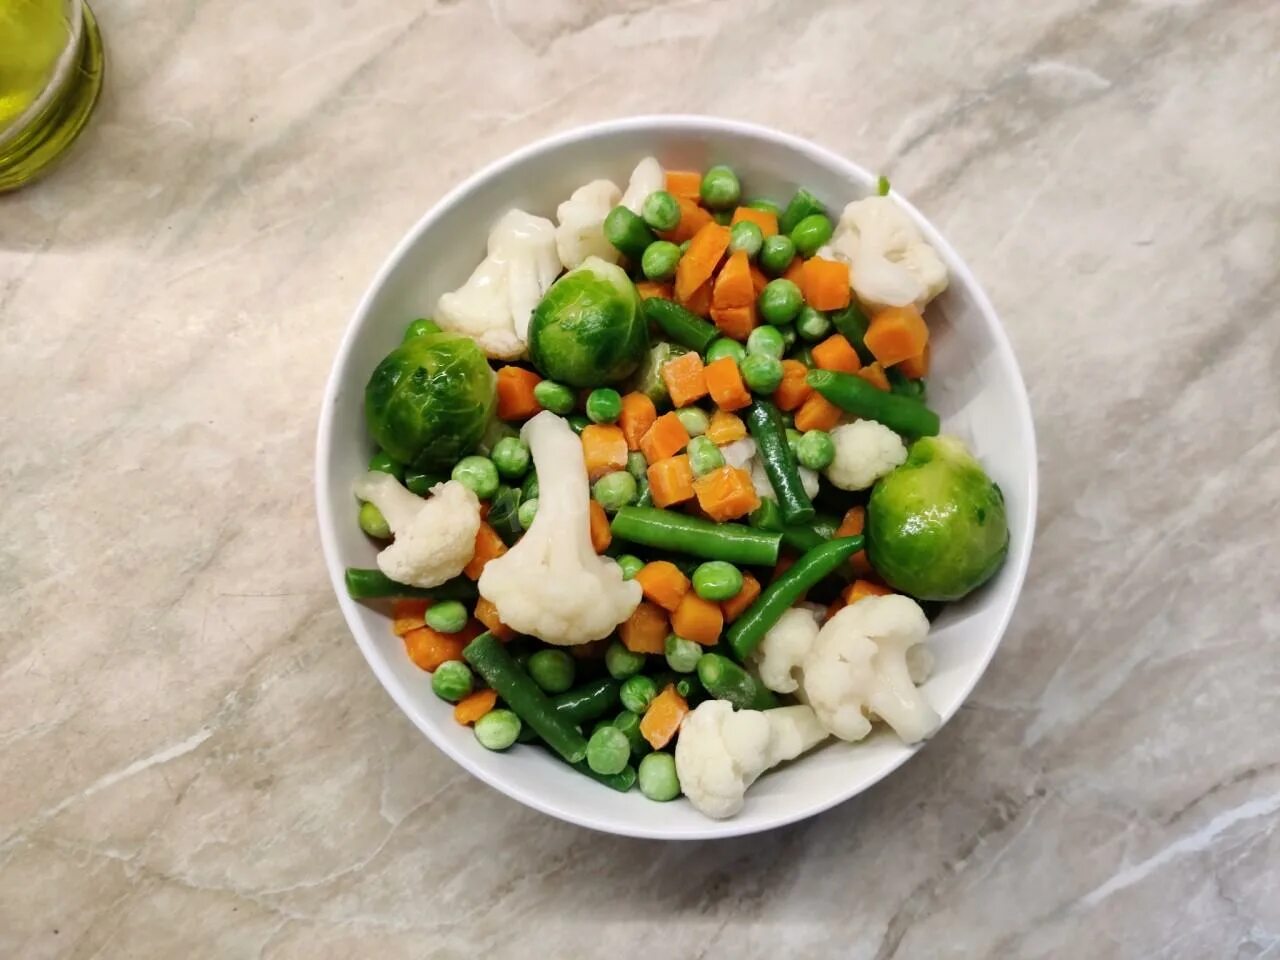 Варка замороженных овощей. Замороженные овощи для завтрака. Замороженные овощи на сковороде. Замороженные овощи в духовке.